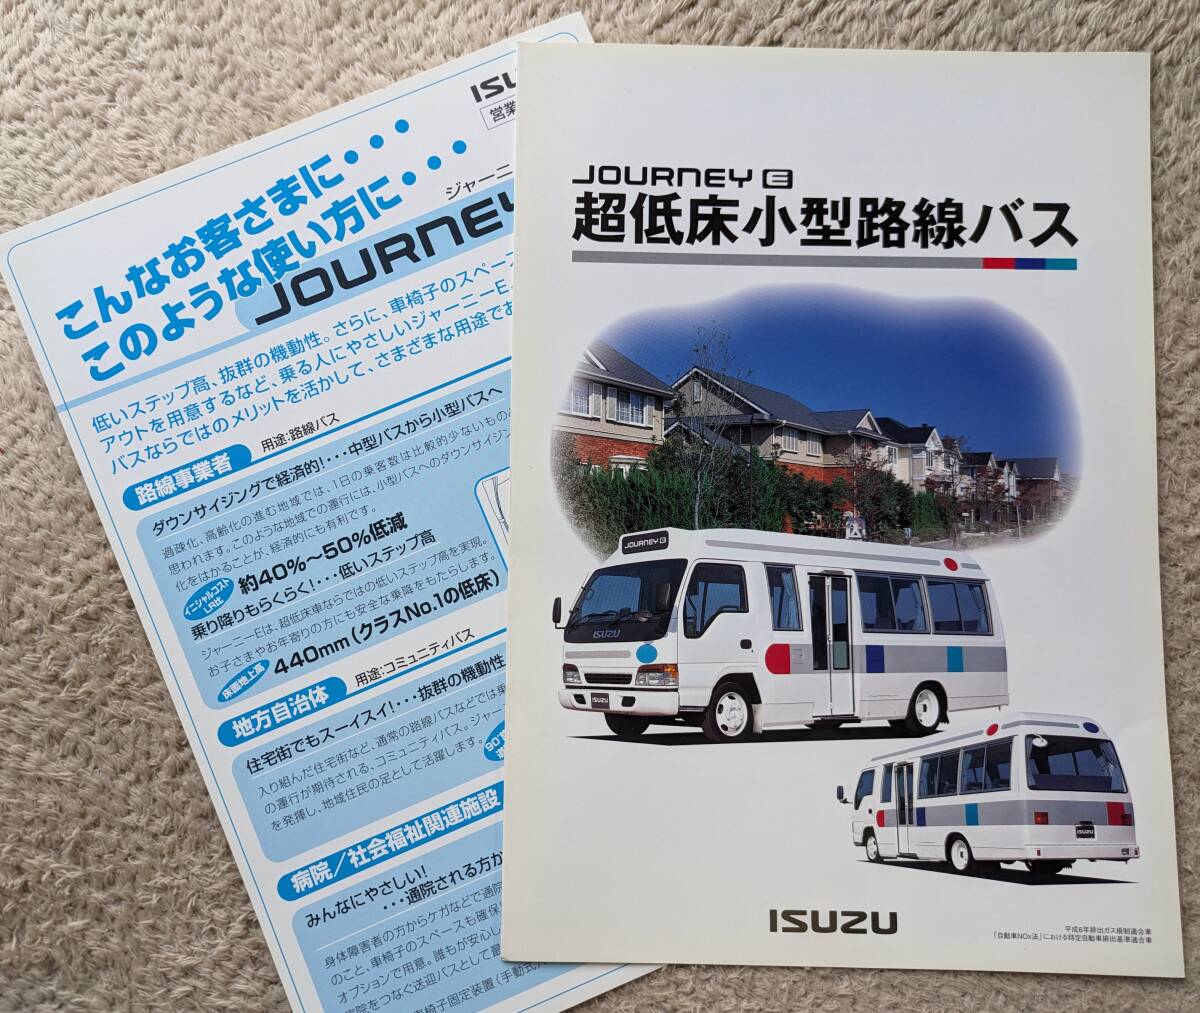 *98.9 Isuzu ja-ni.-E супер низкий пол маленький размер пригородный автобус каталог все 4P запись 